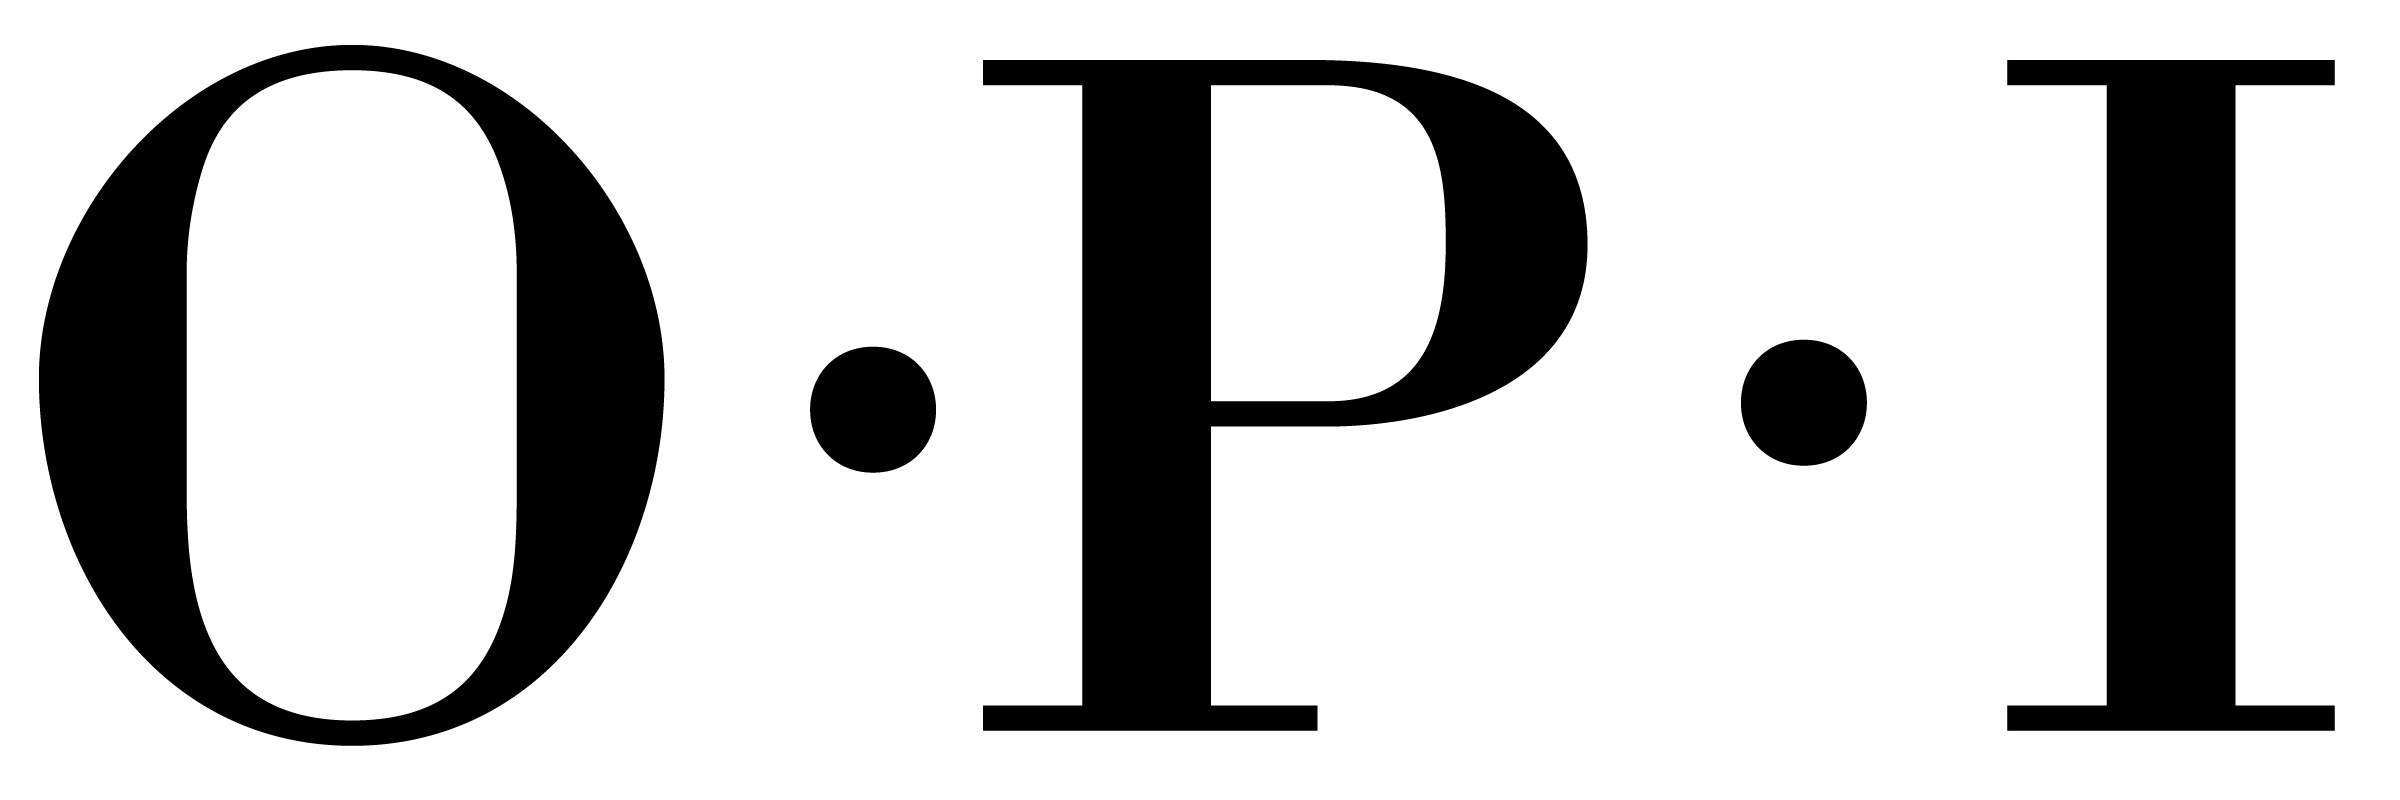 OPI_logo_logotype.png